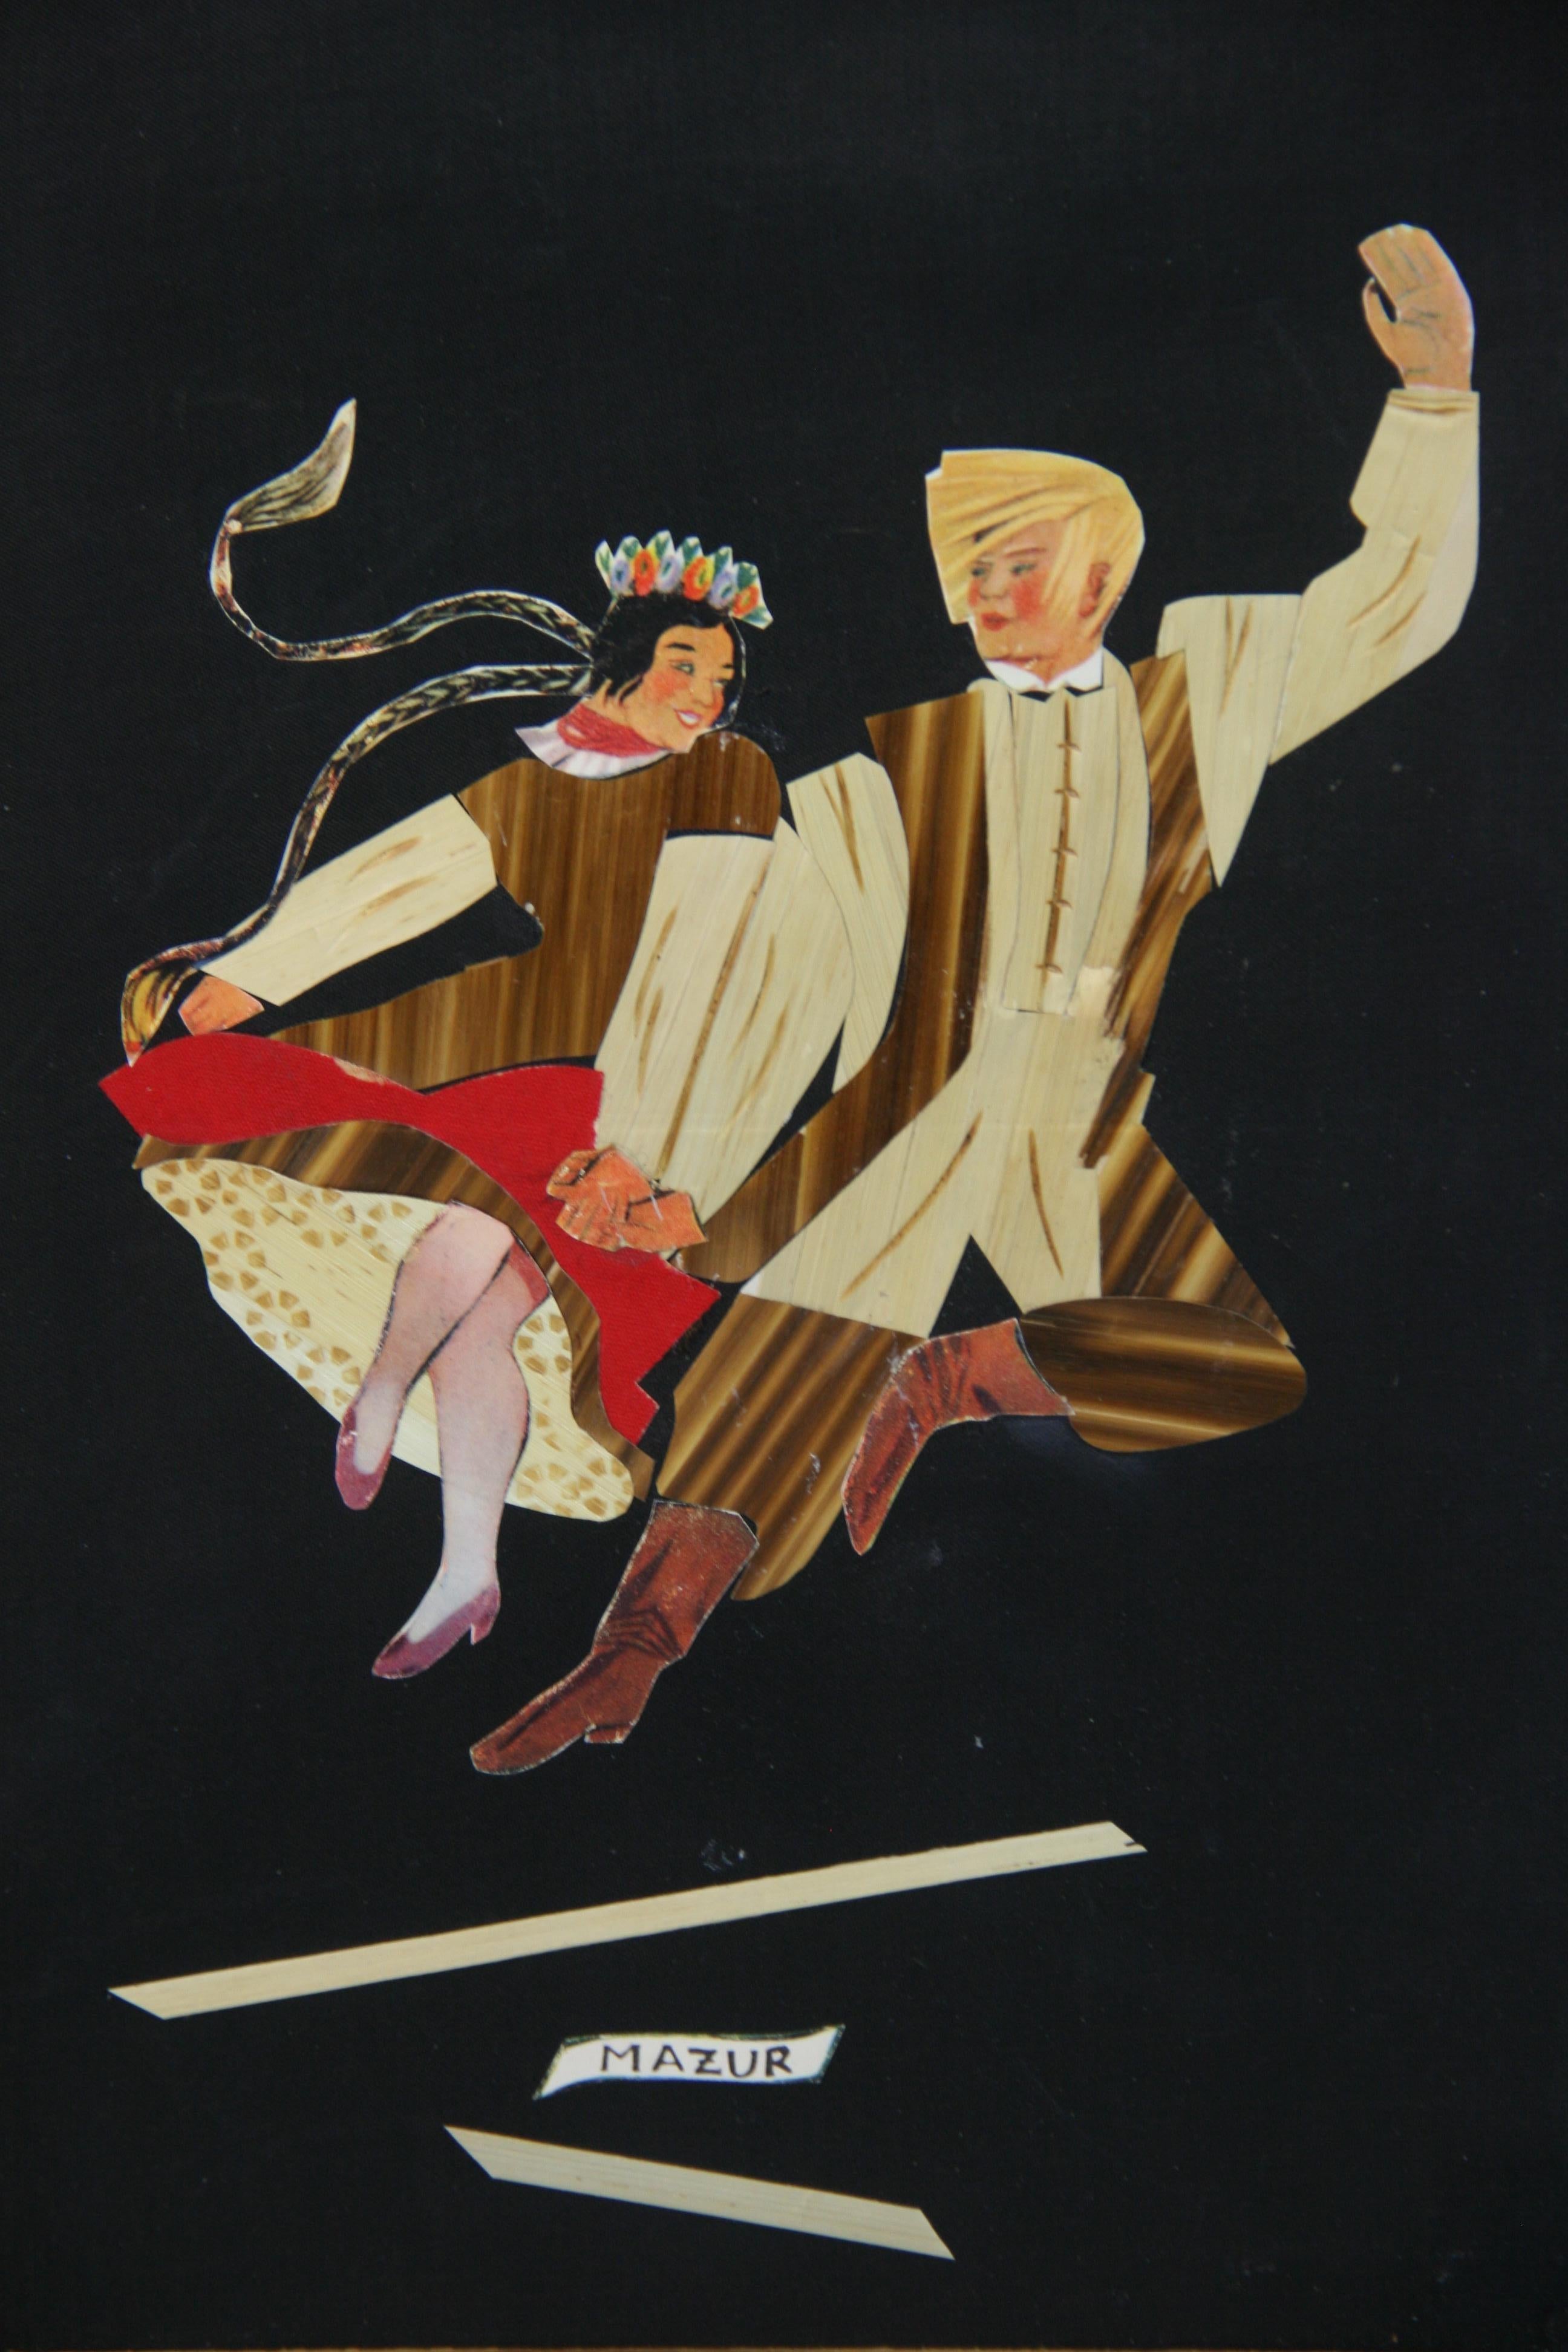 5201 Vintage Polish folk dancer's  collage  doing the Mazur